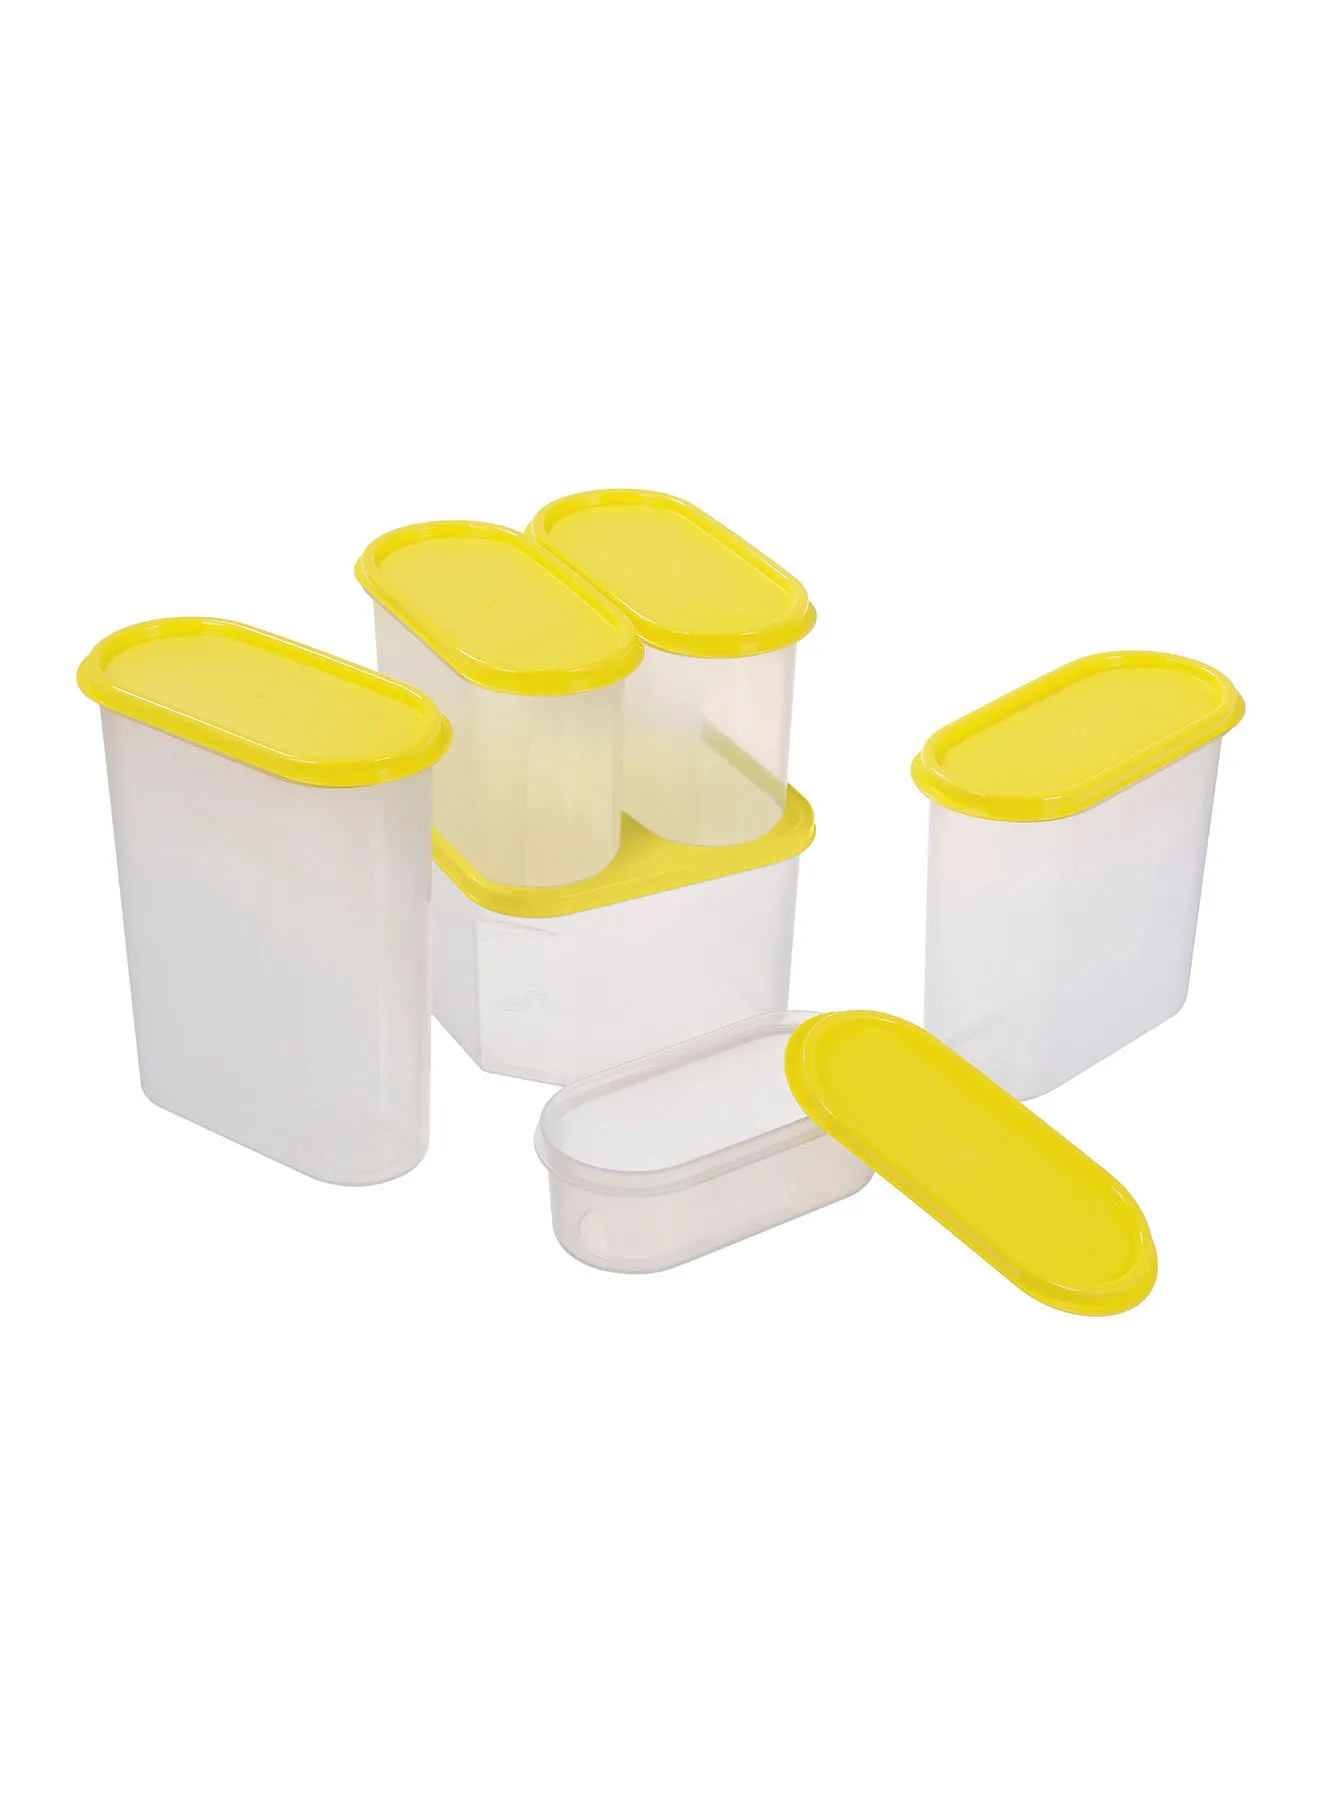 Amal 6 Piece Food Storage Container Set - Food Storage Box - Storage Boxes - Kitchen Cabinet Organizers - Food Container - Clear/Yellow Clear/Yellow